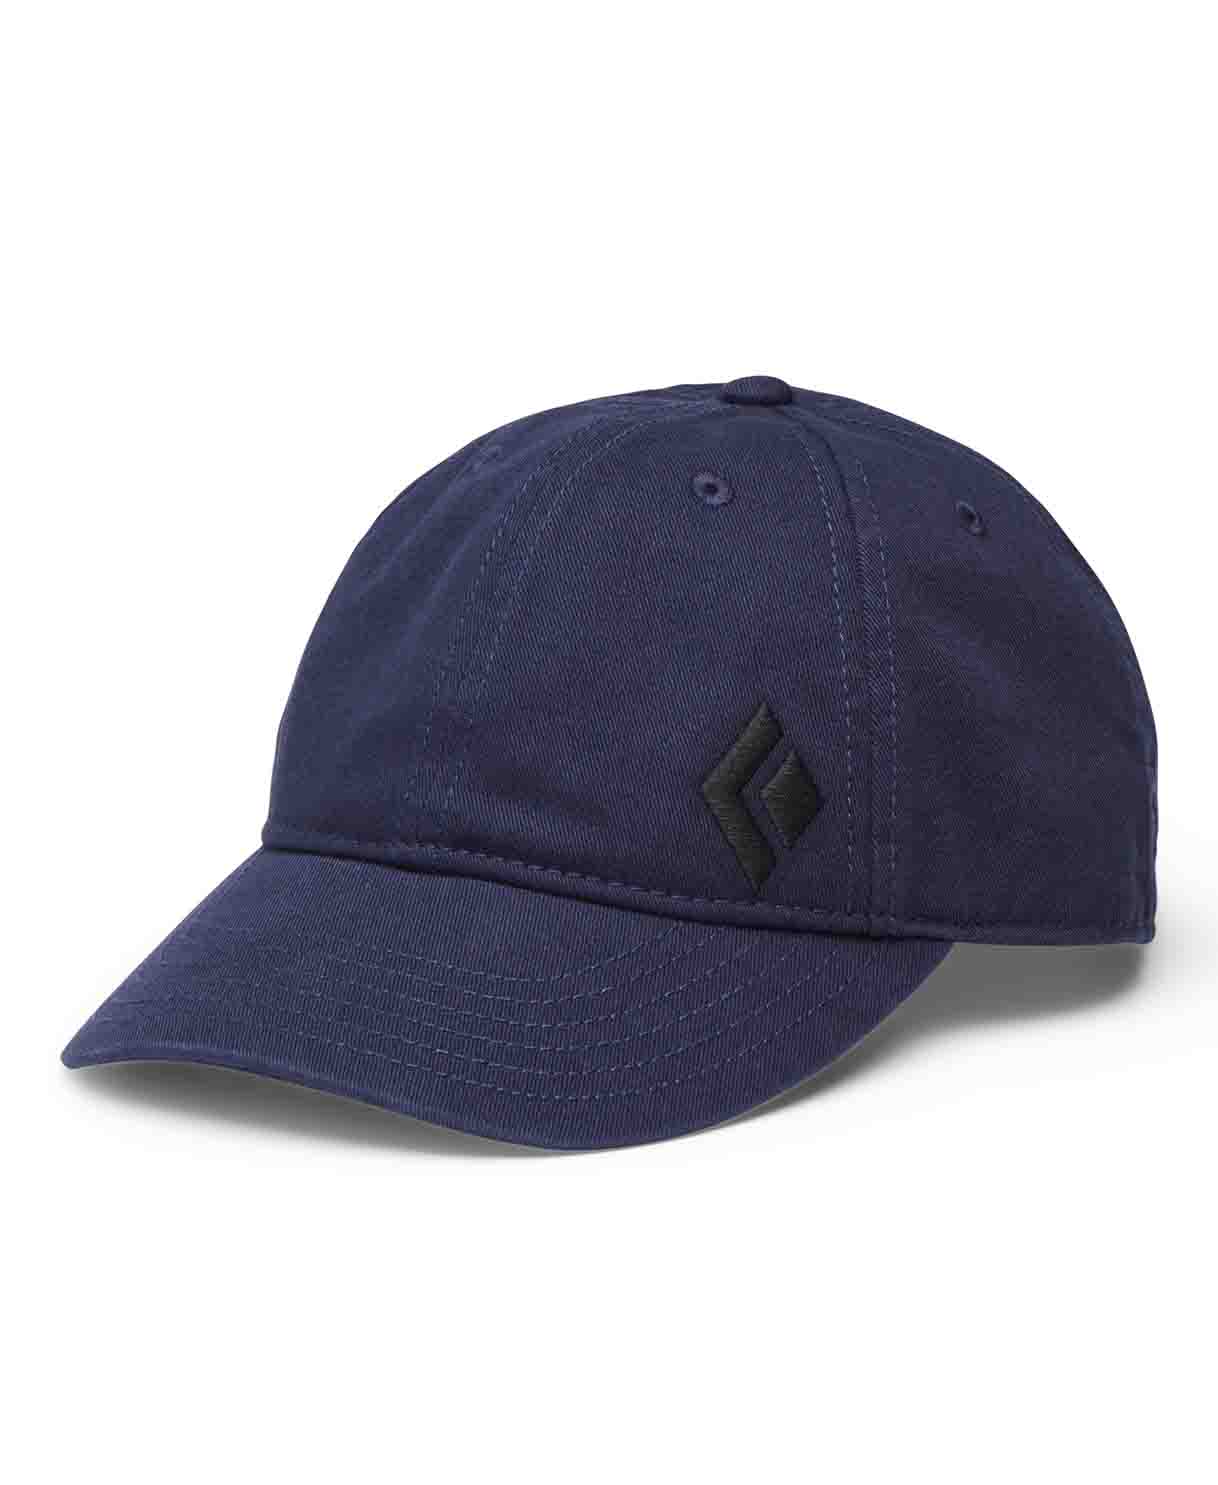 【 Black Diamond 】S24 BD Heritage Cap 斜紋布老帽